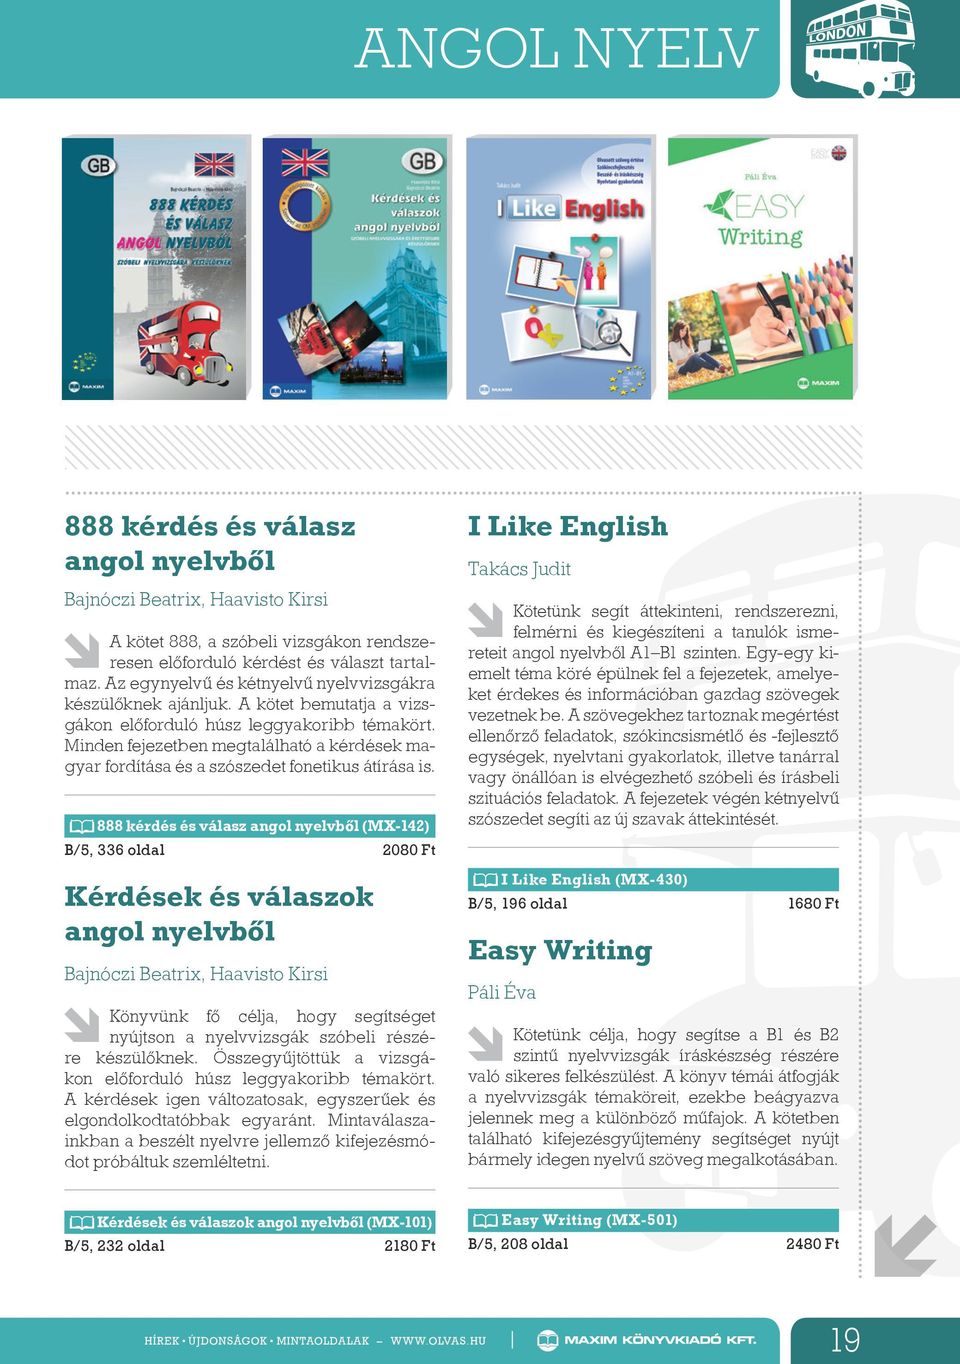 Minden fejezetben megtalálható a kérdések magyar fordítása és a szószedet fonetikus átírása is.